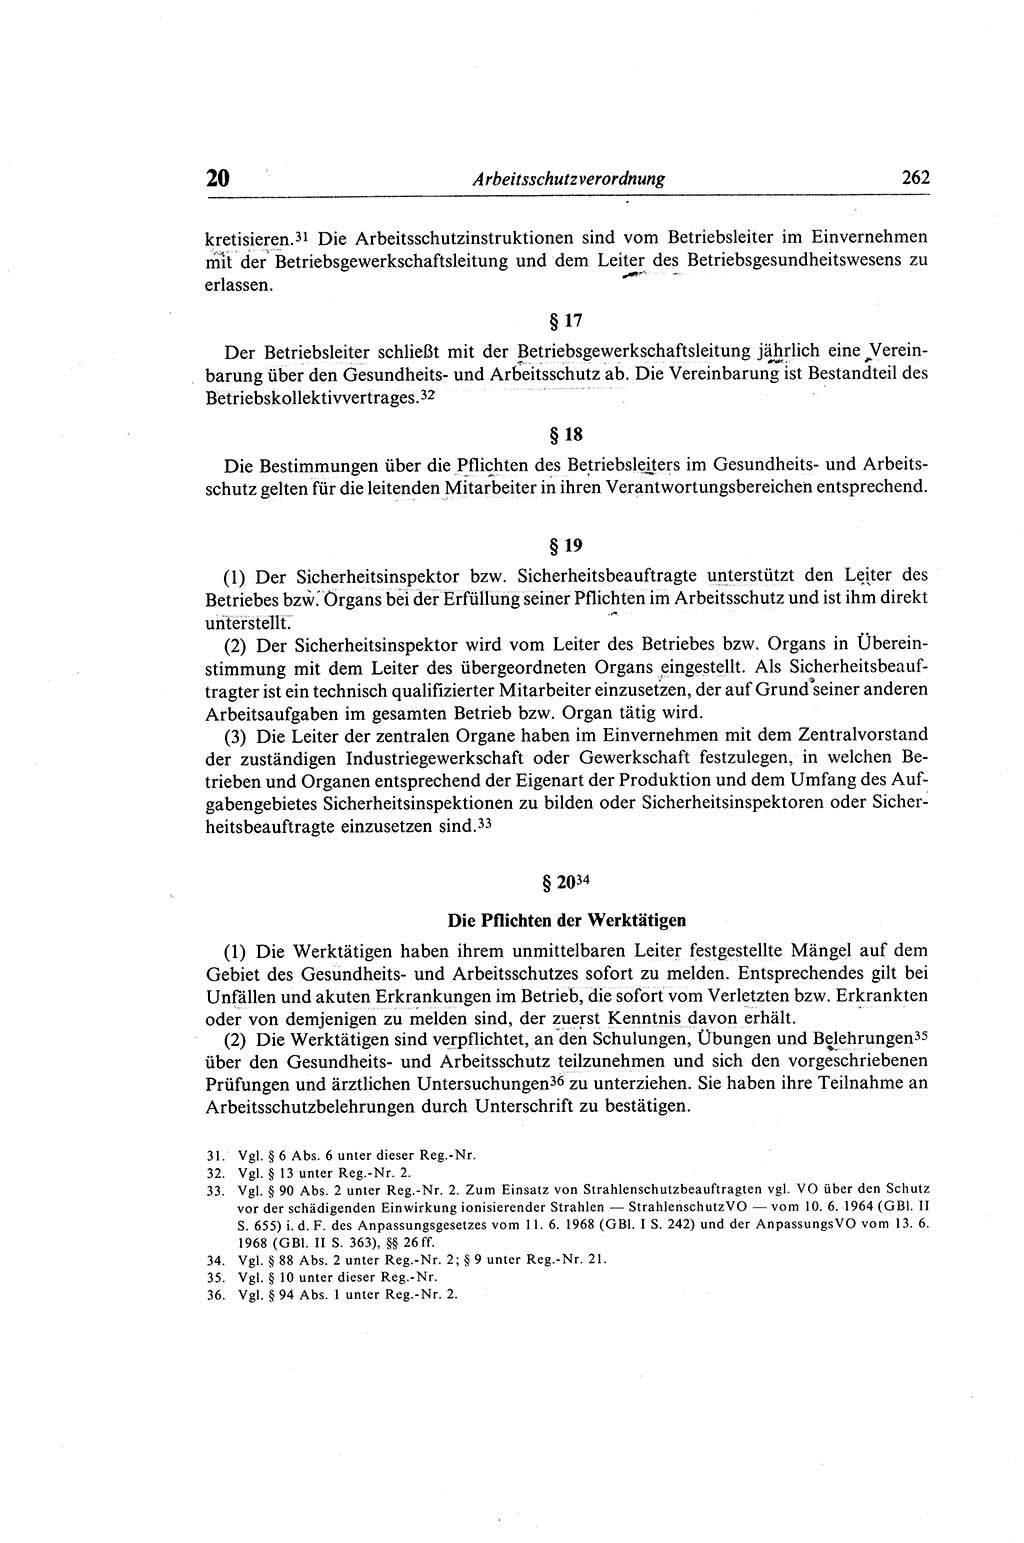 Gesetzbuch der Arbeit (GBA) und andere ausgewählte rechtliche Bestimmungen [Deutsche Demokratische Republik (DDR)] 1968, Seite 262 (GBA DDR 1968, S. 262)